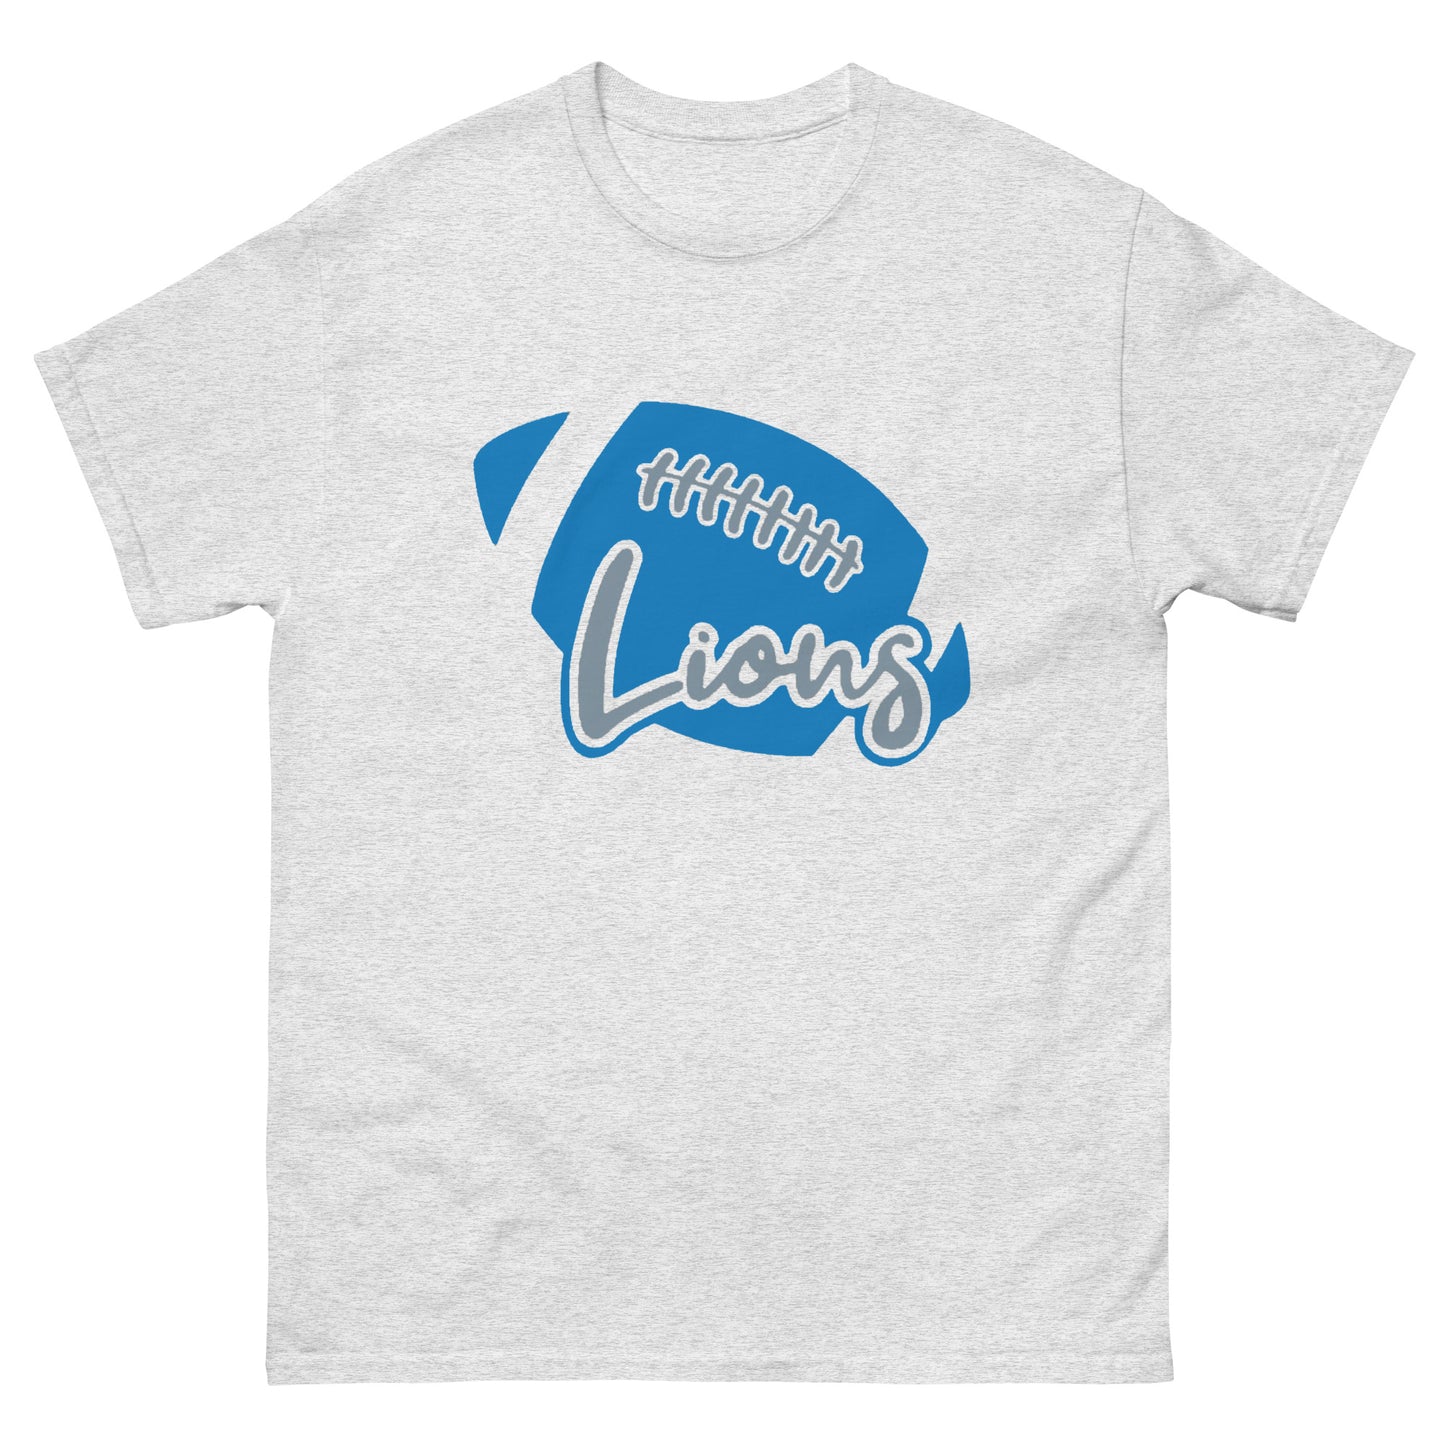 Detroit Lions T-Shirt